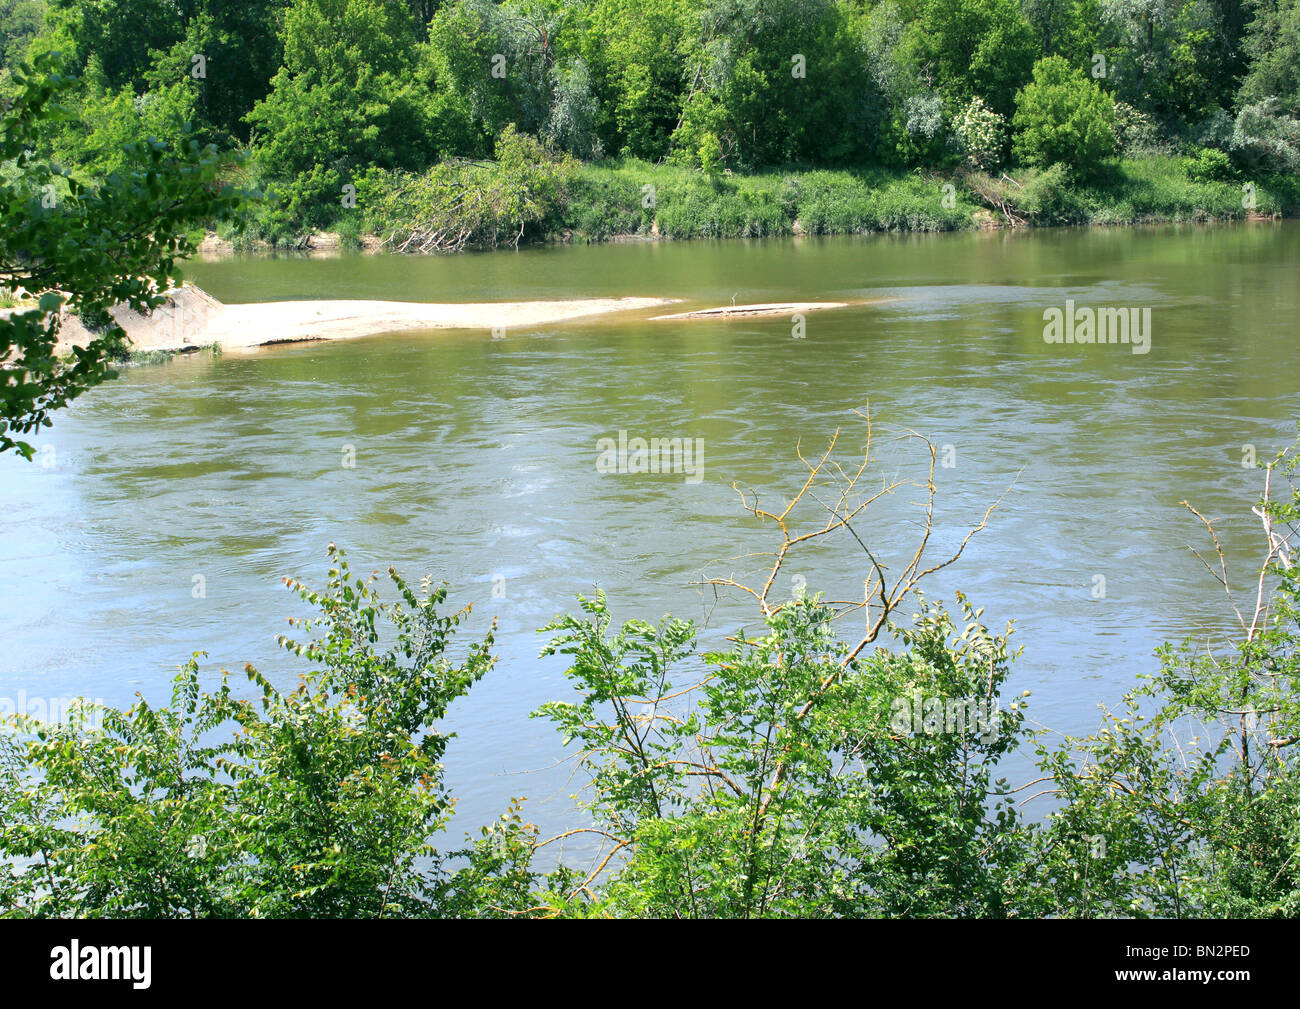 Fotografia di un fiume o di un fiume bordata di alberi e vegetazioni Foto Stock